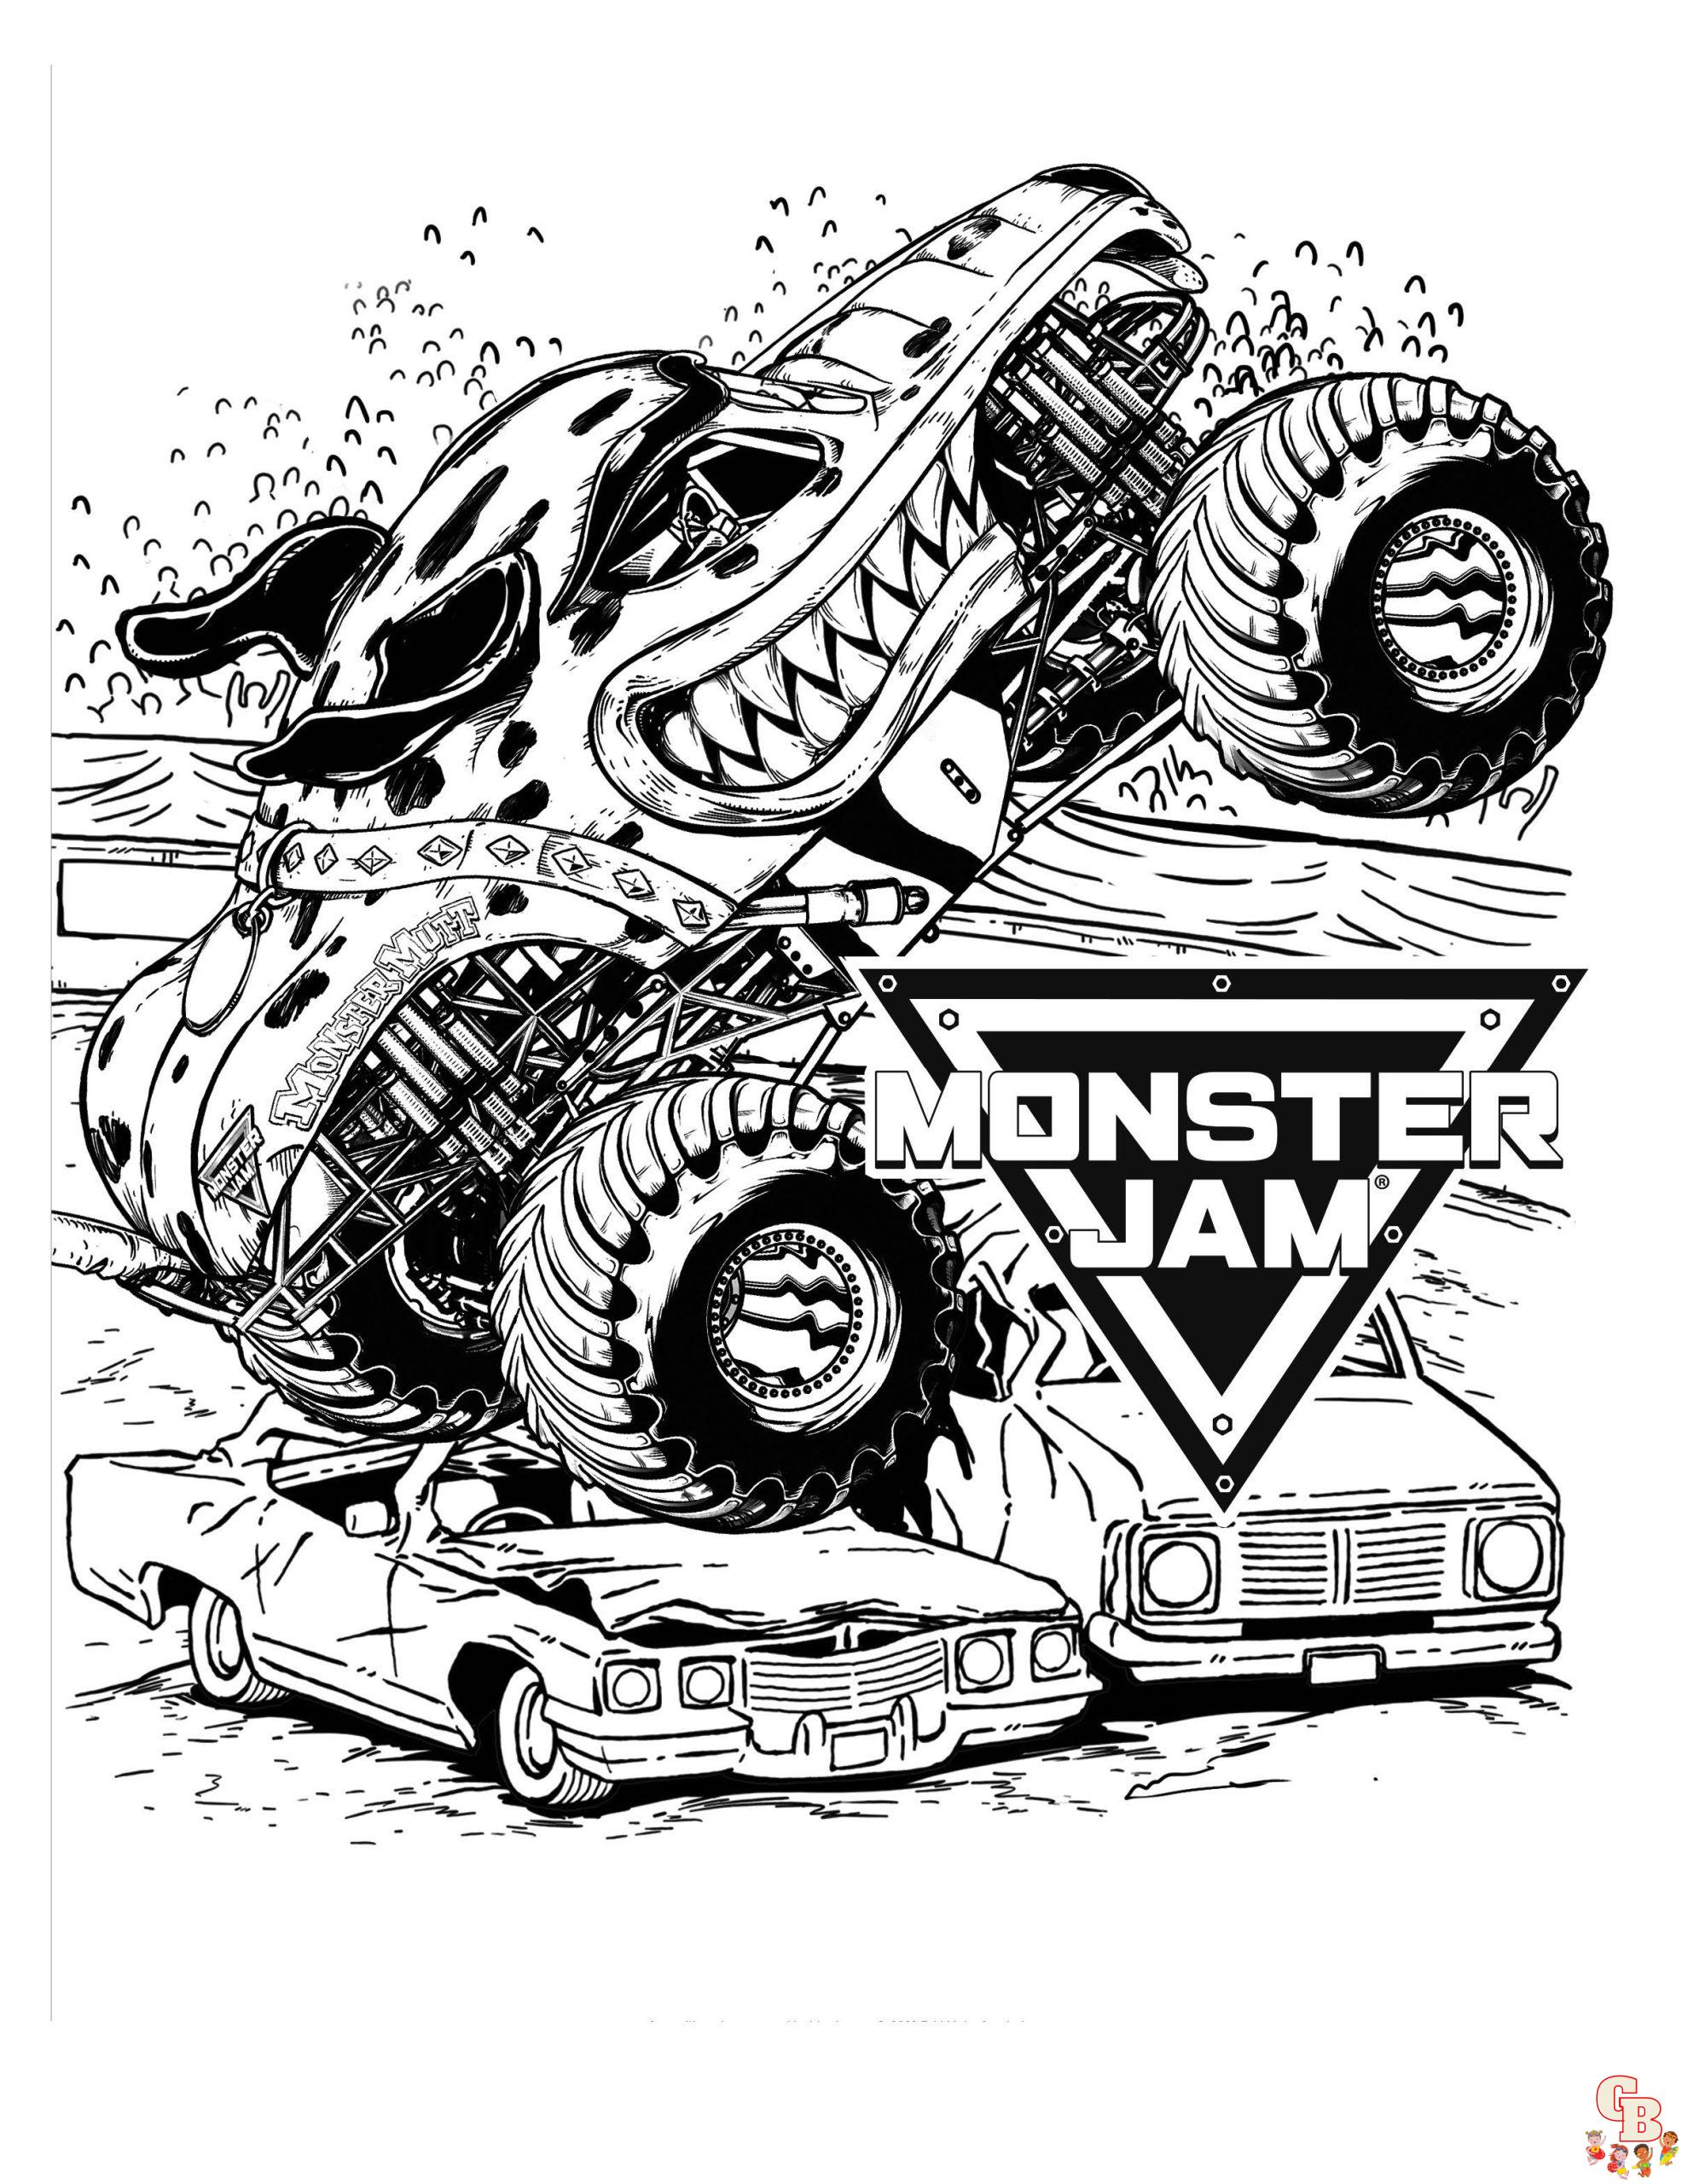 Página para colorir monster truck para crianças